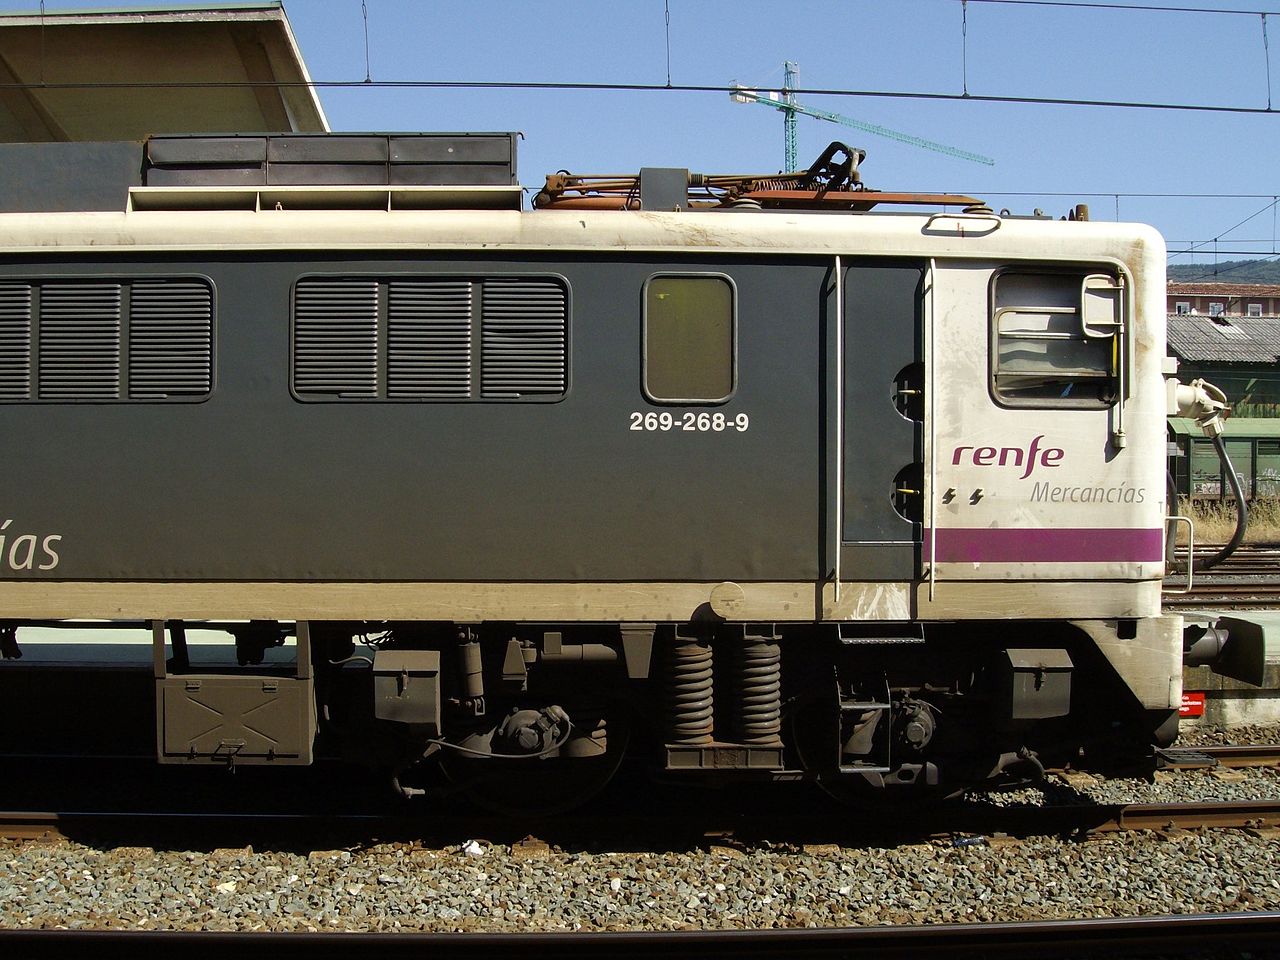 Locomotora 269.268 con esquema pantone-mercancías. Foto de Andrés MArqués en Madrid en 2008.